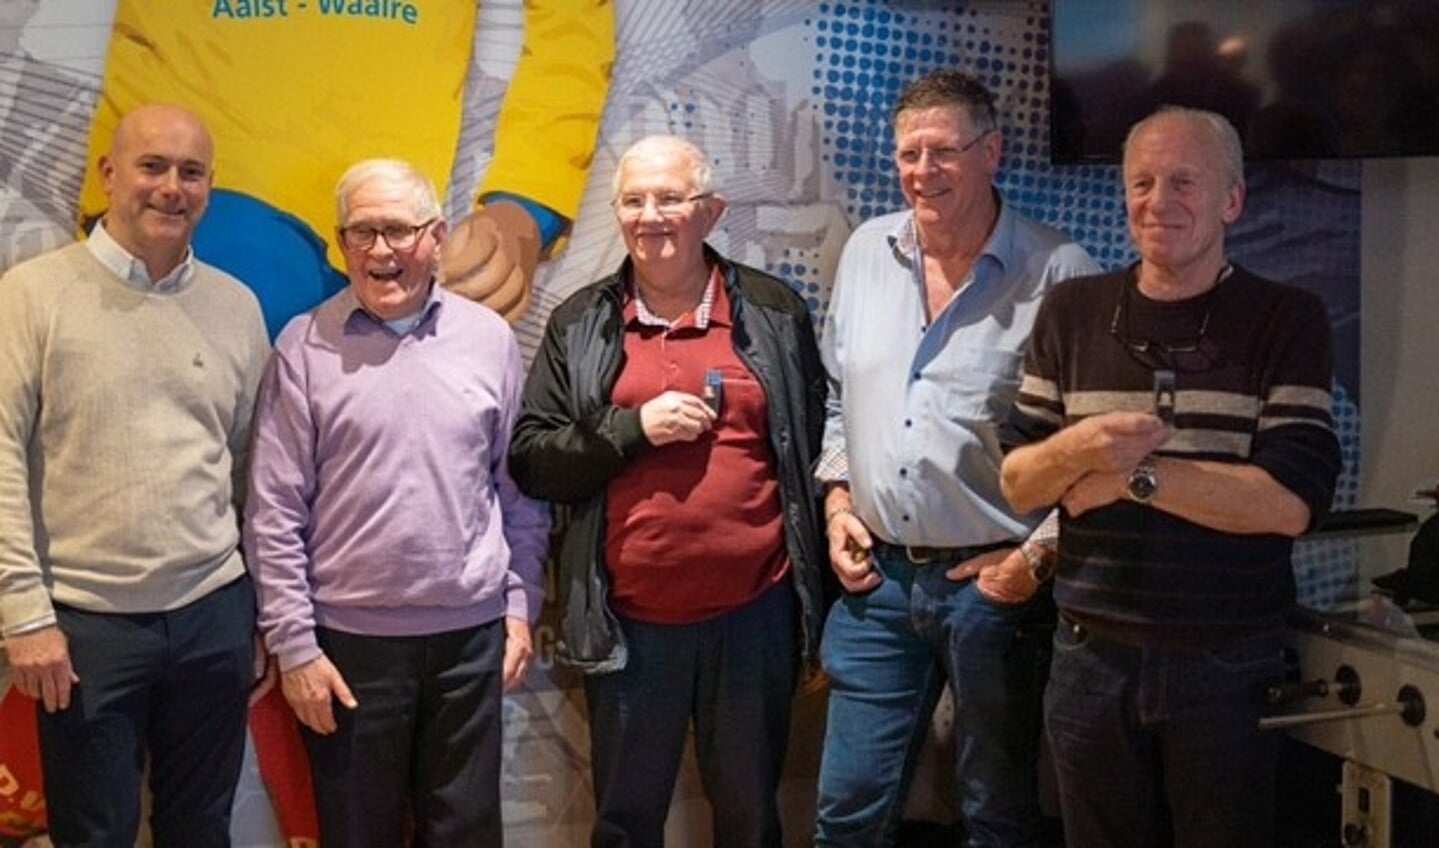 De jubilarissen op een rij. V.l.n.r. Dave Daamen, Theo van den Bergh, Henk Blankers, Toine van den Boomen en Armand Didden.